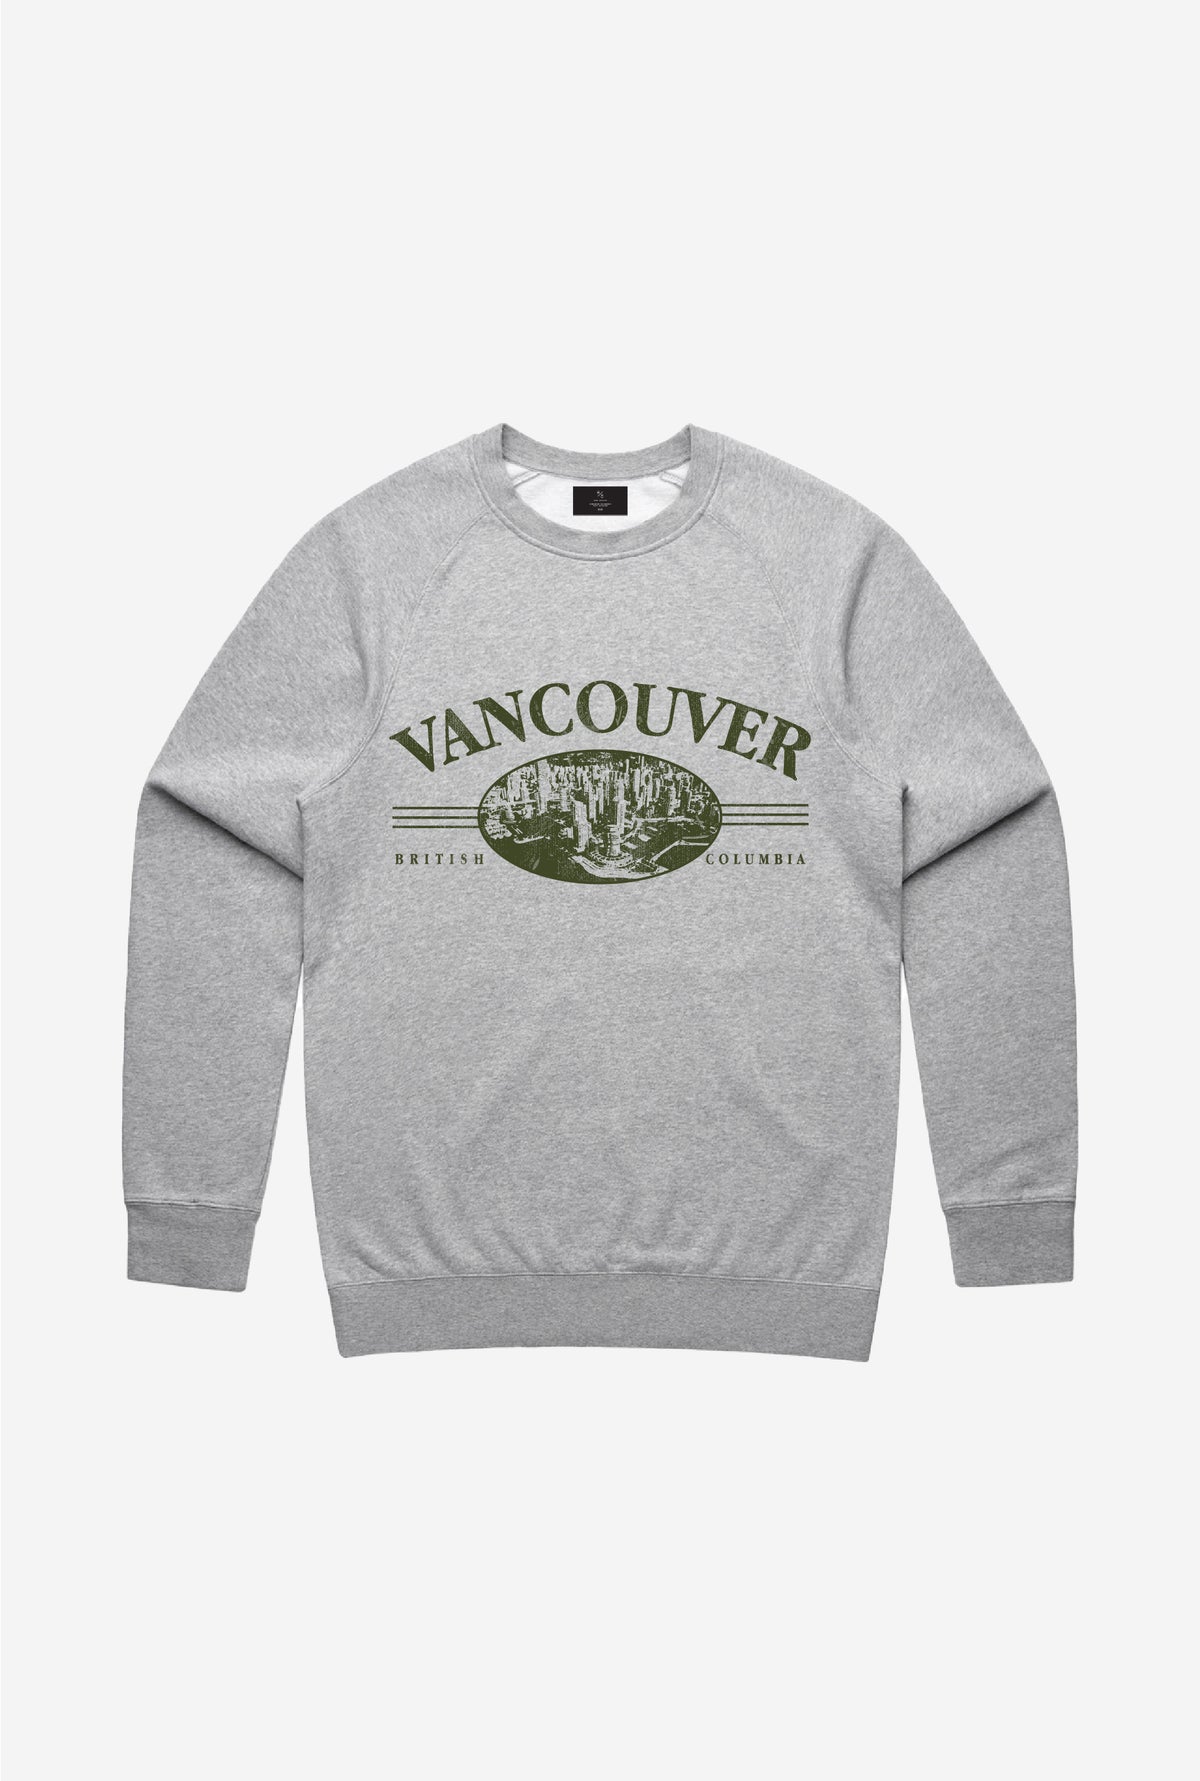 Vancouver Vintage Crewneck - Grey